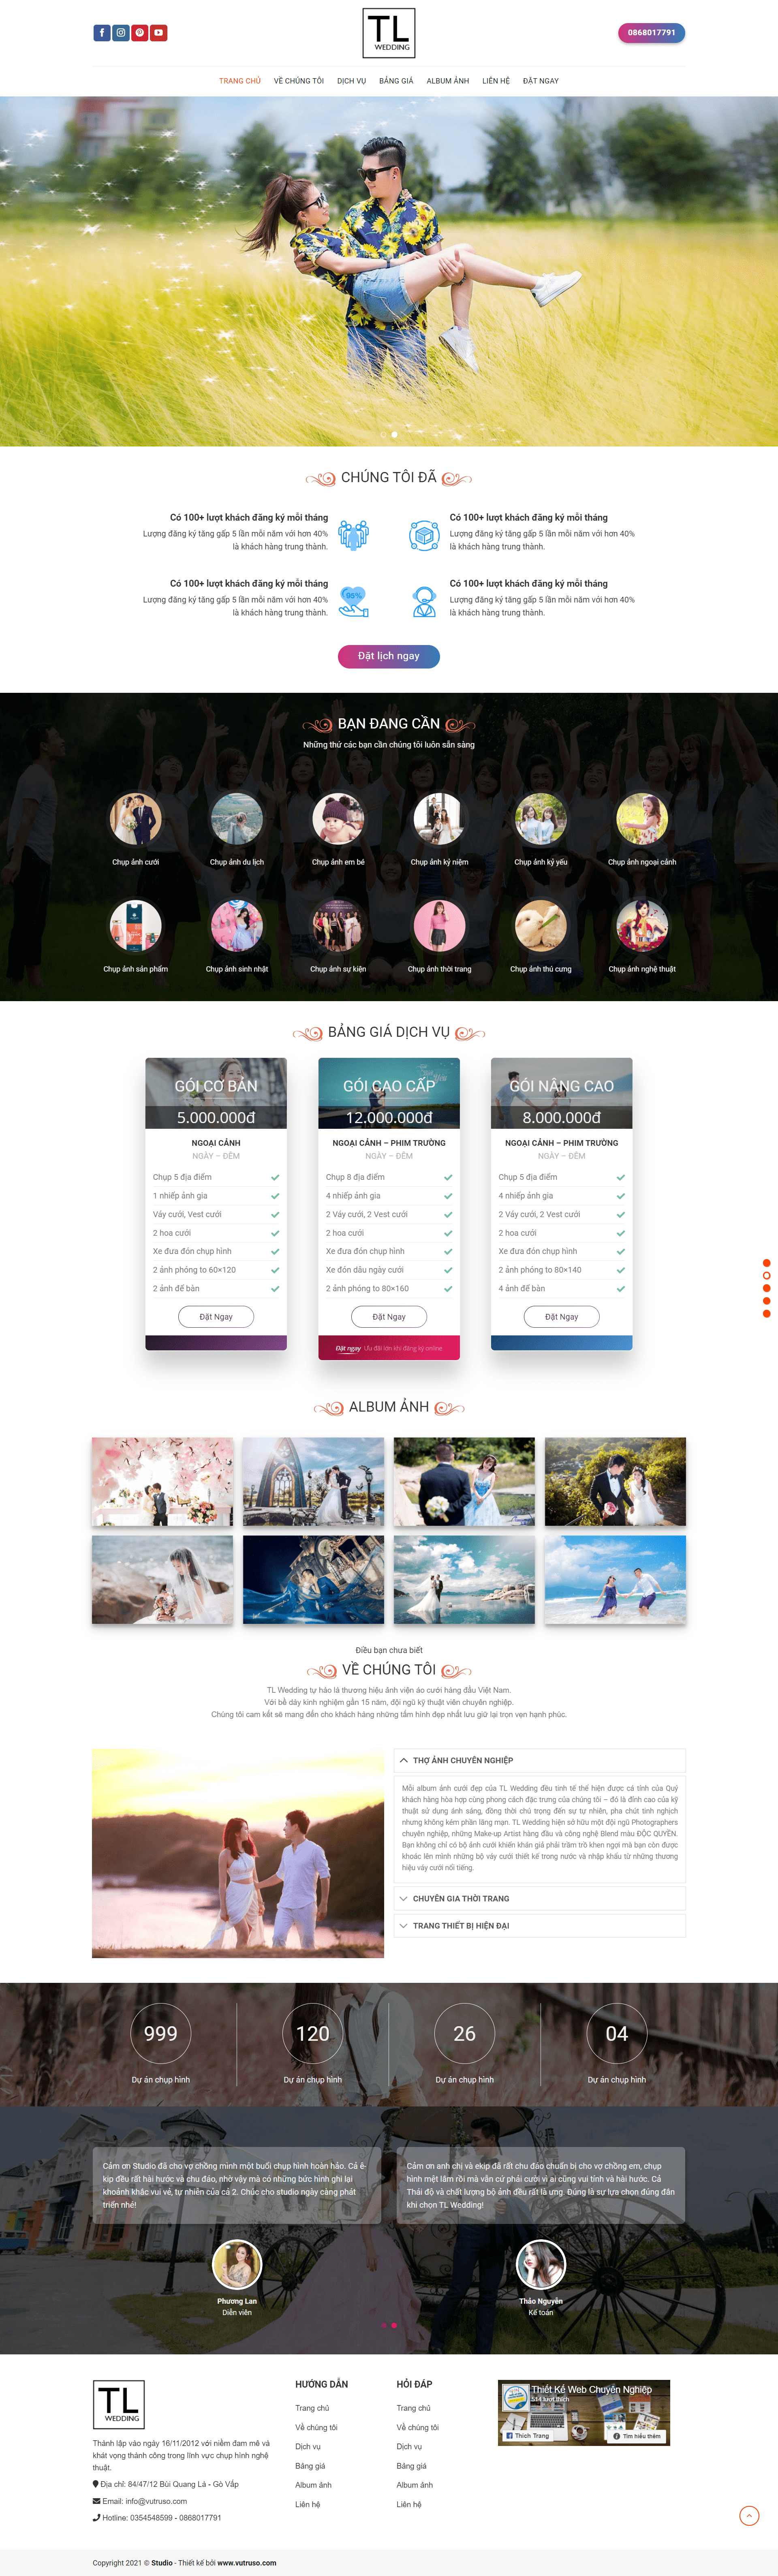 Mẫu website chụp ảnh studio chuyên nghiệp – TL Wedding